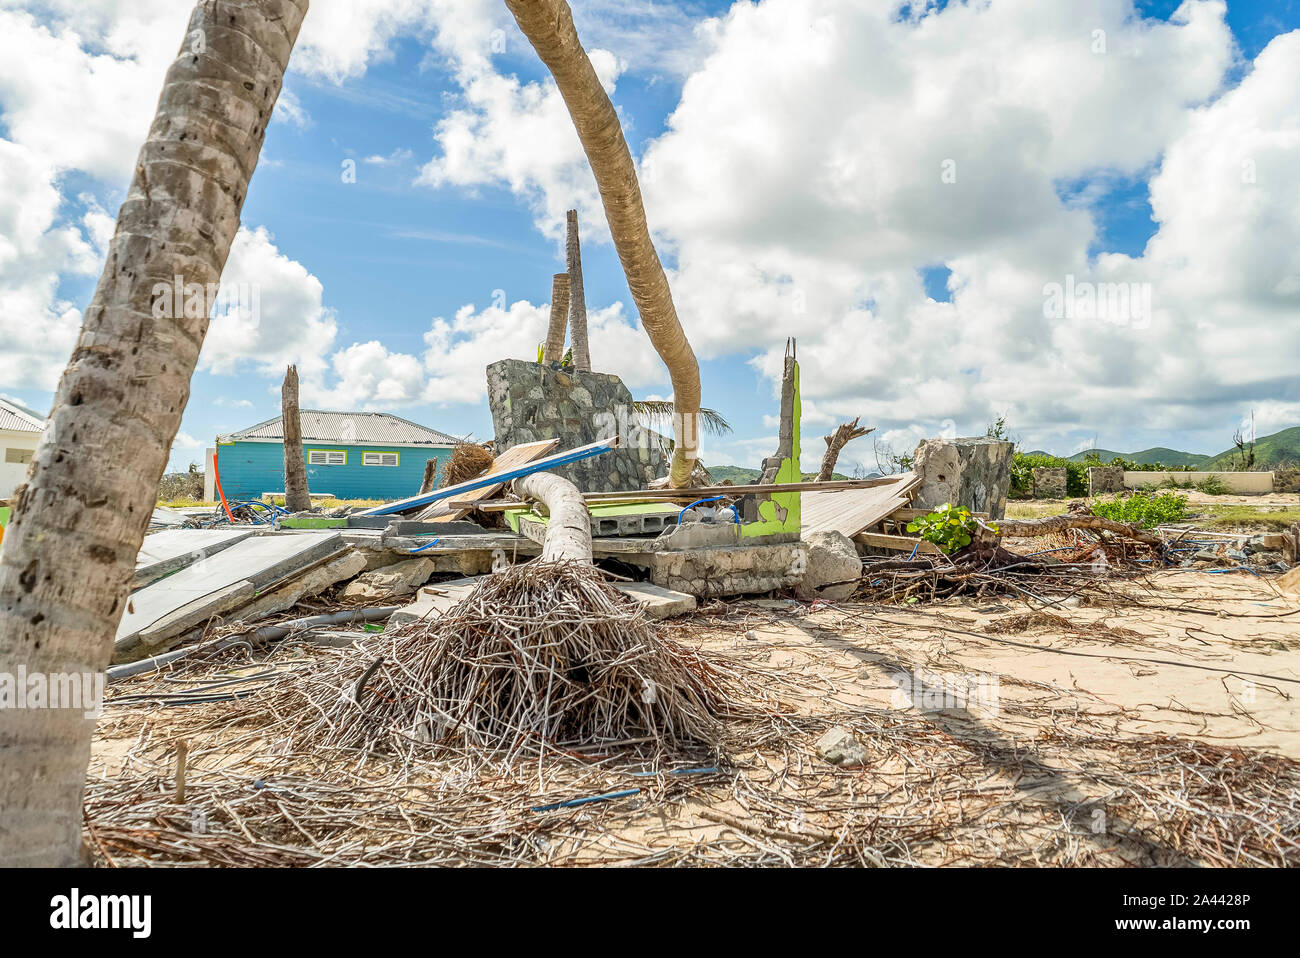 L'ouragan Irma suite à la destruction de certains.St Maarten/soufflage plages terra... des arbres et à déraciner certains sur la plage. Banque D'Images